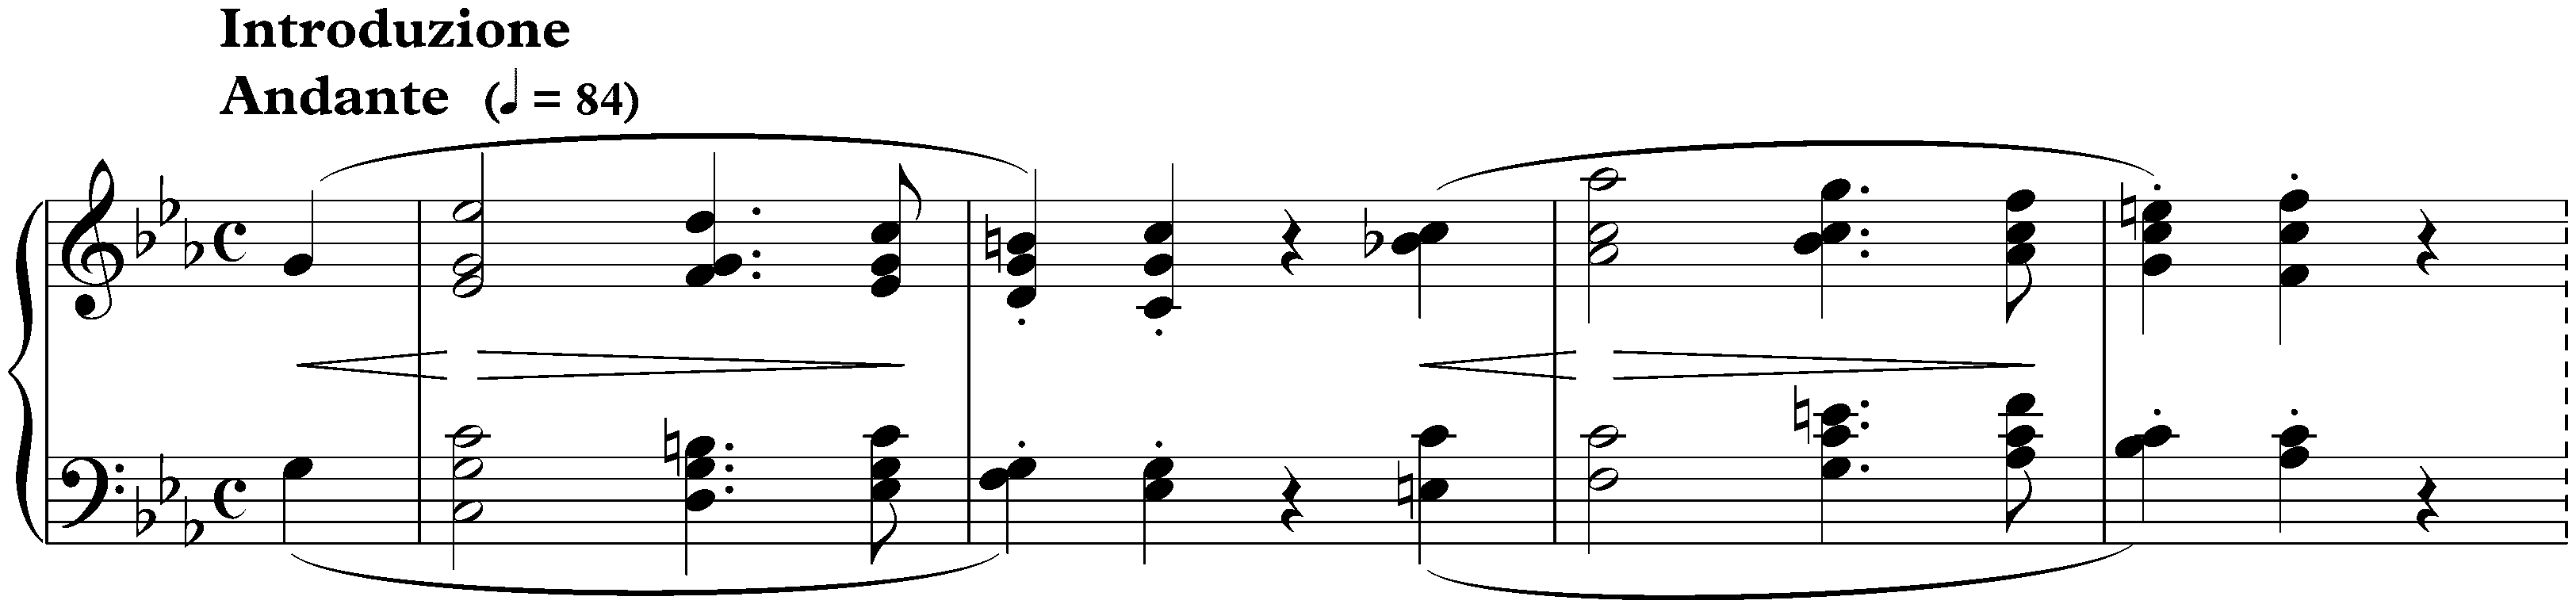 Rondo in E-flat major, op. 16